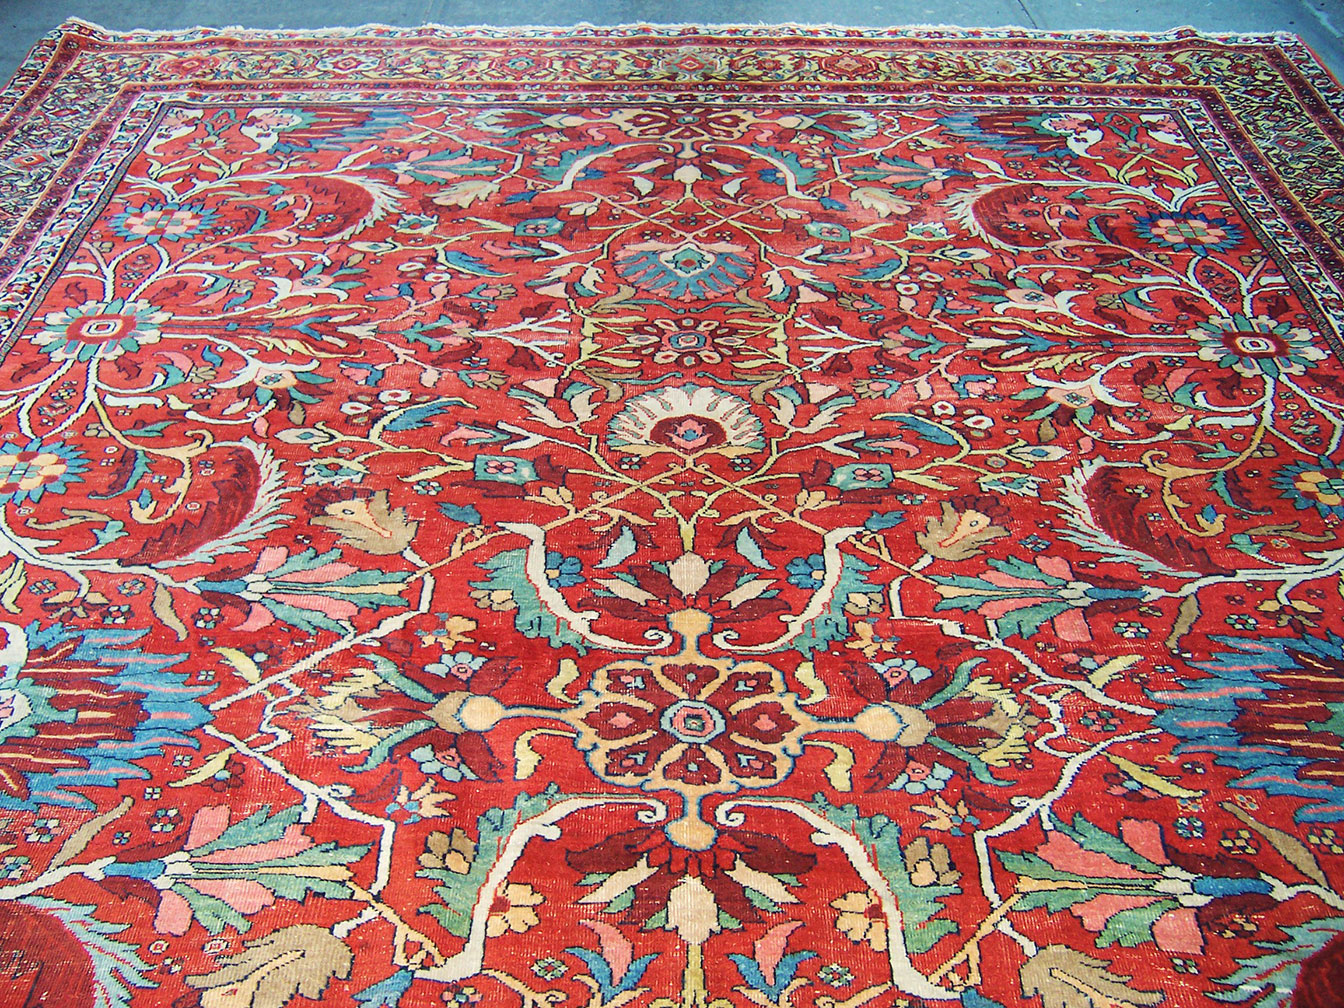 Antique mahal Carpet - # 53215